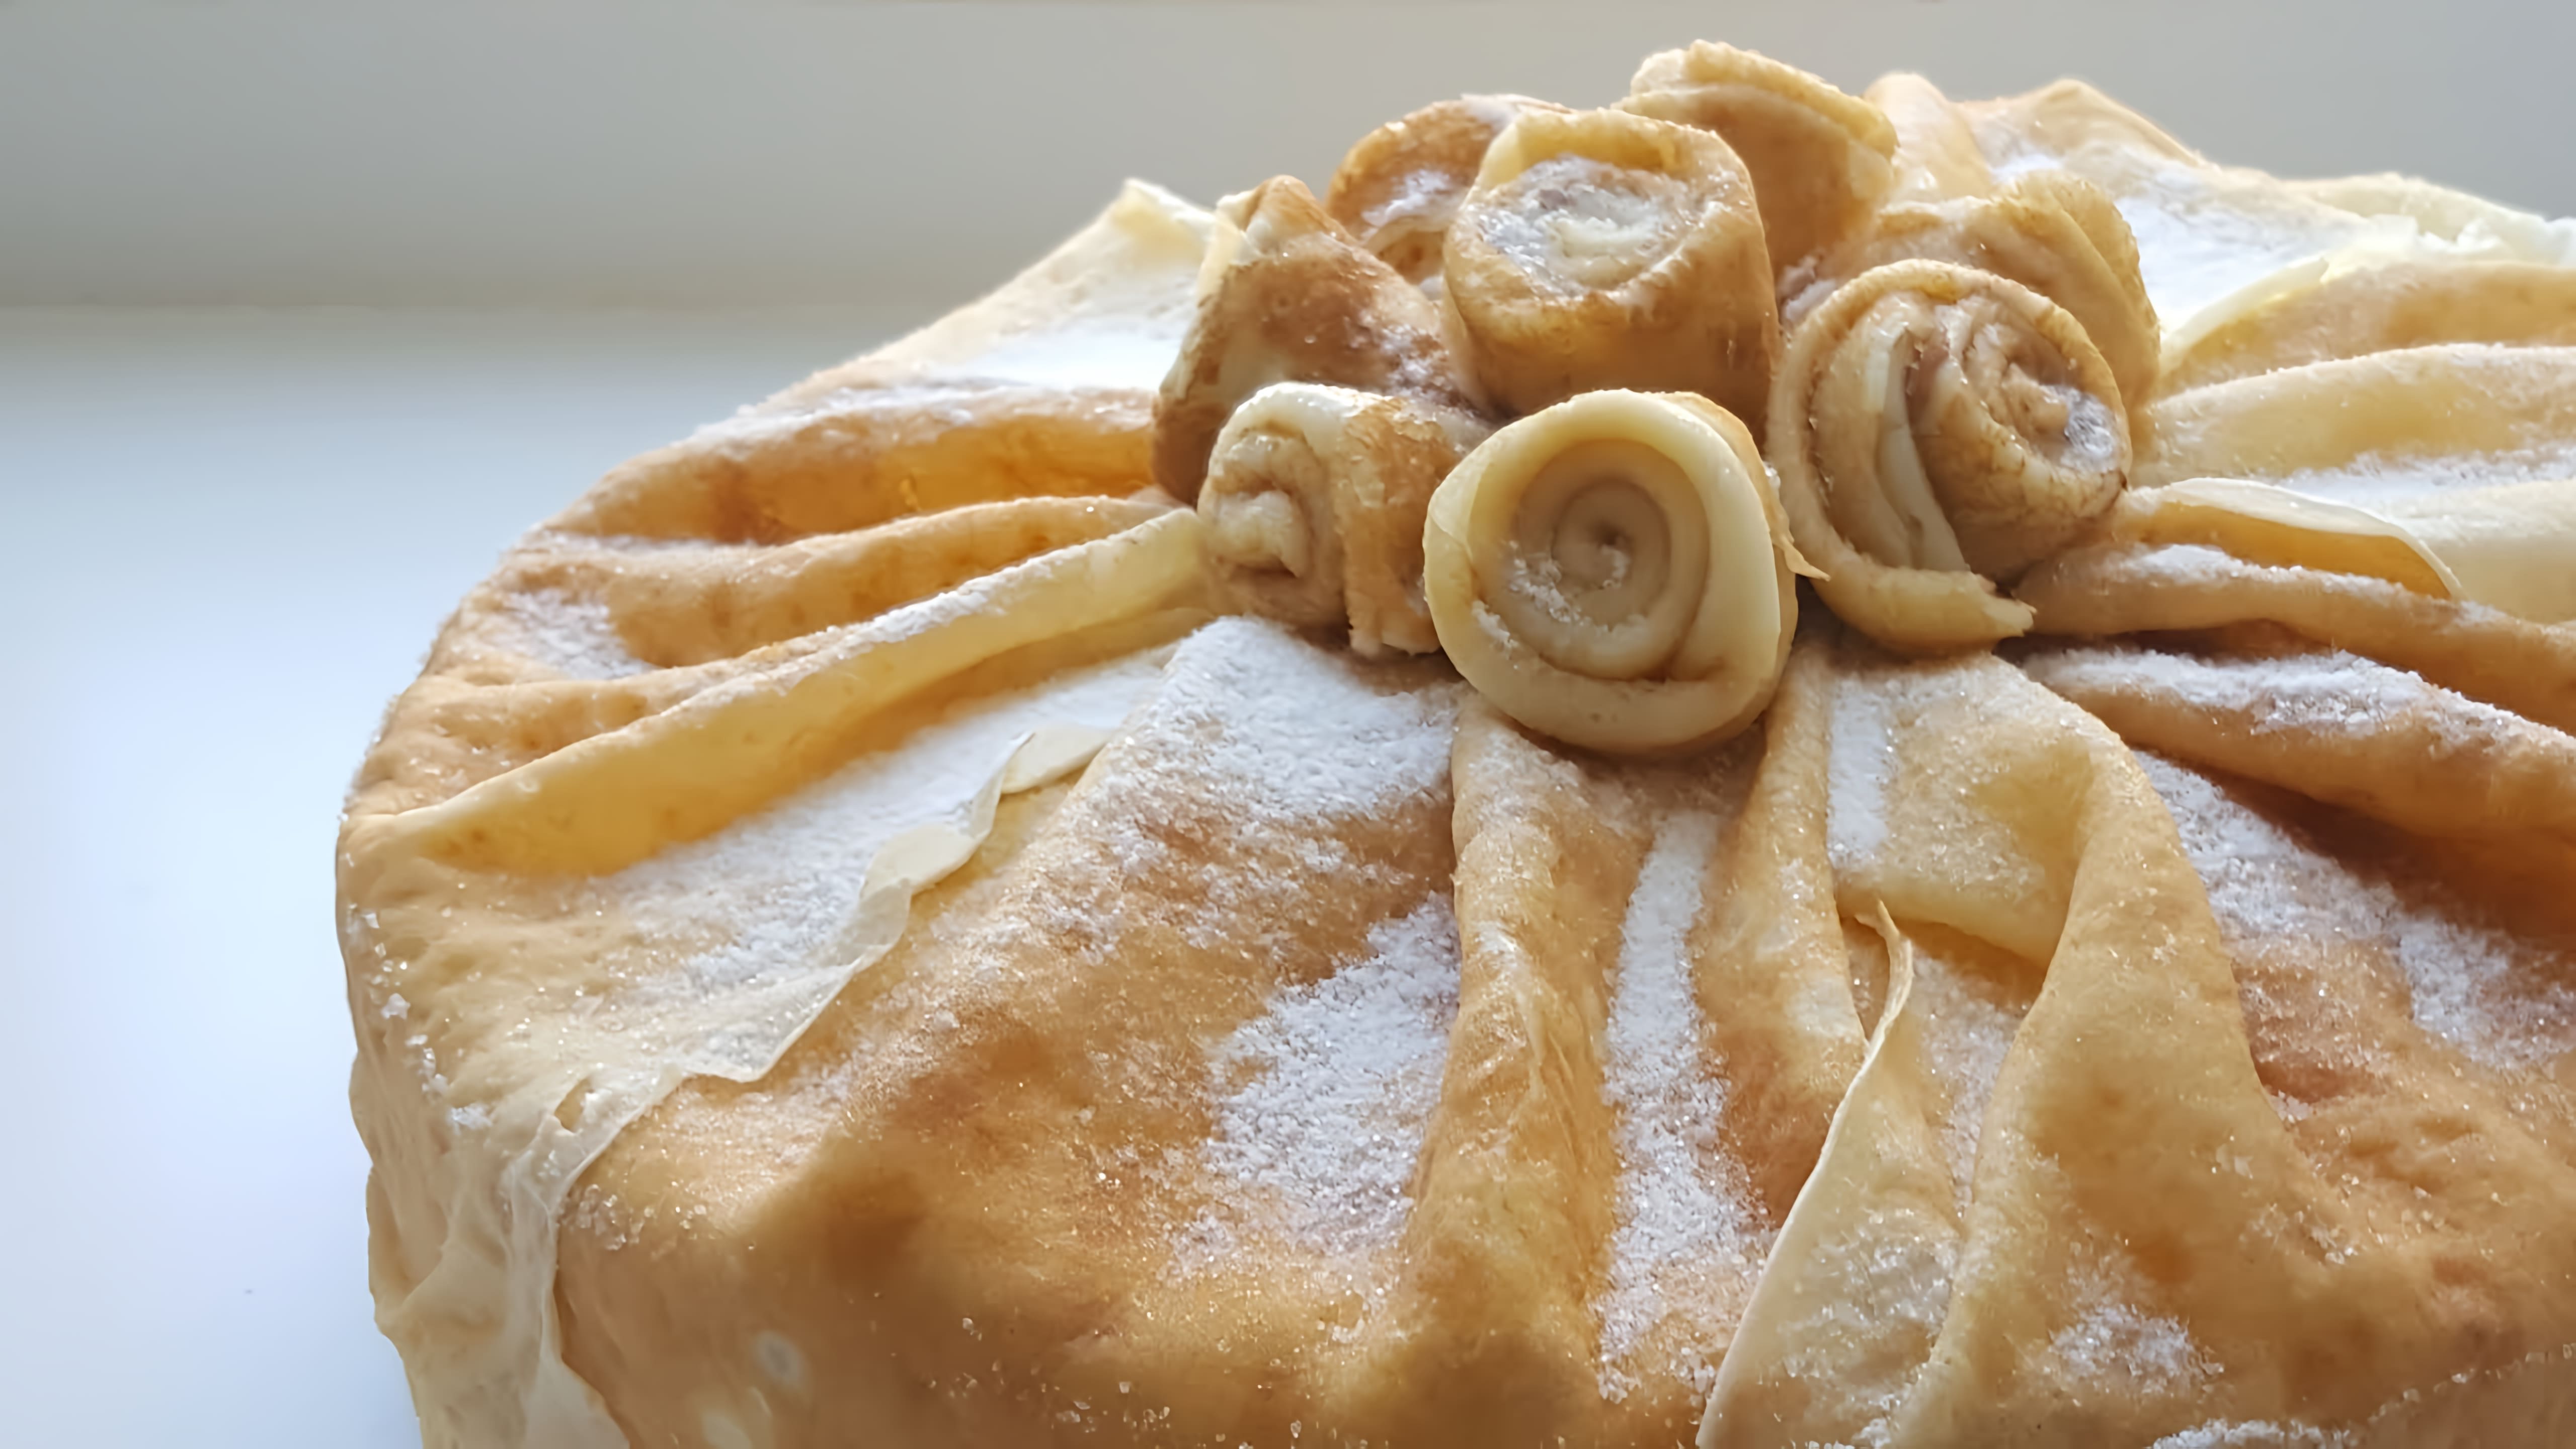 В этом видео демонстрируется процесс приготовления блинного торта со сливочно-творожным кремом